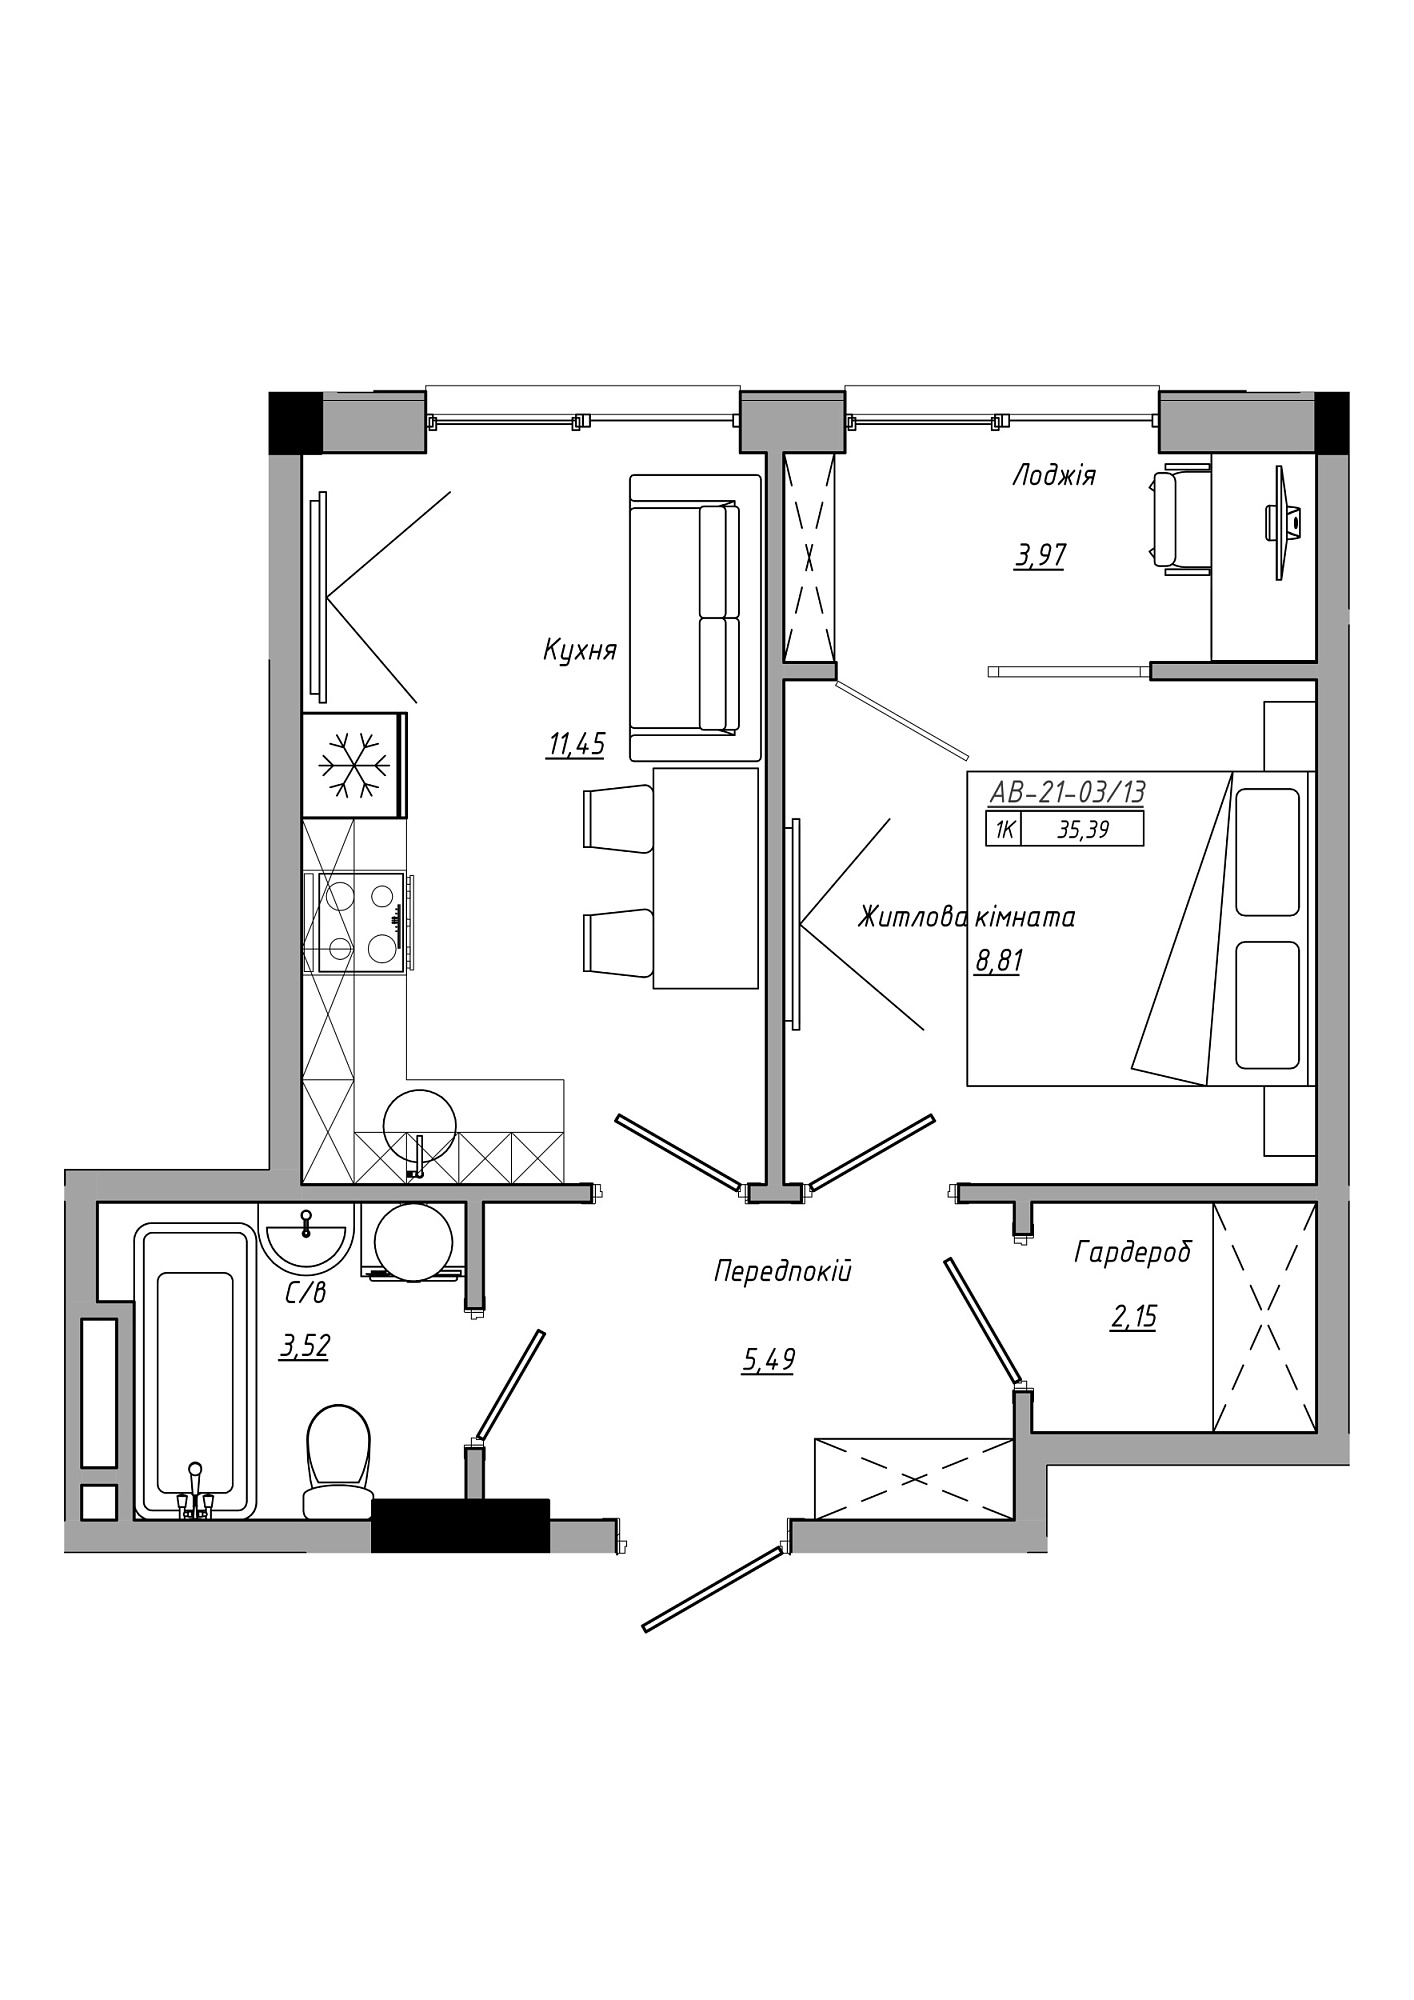 Планування 1-к квартира площею 35.39м2, AB-21-03/00013.